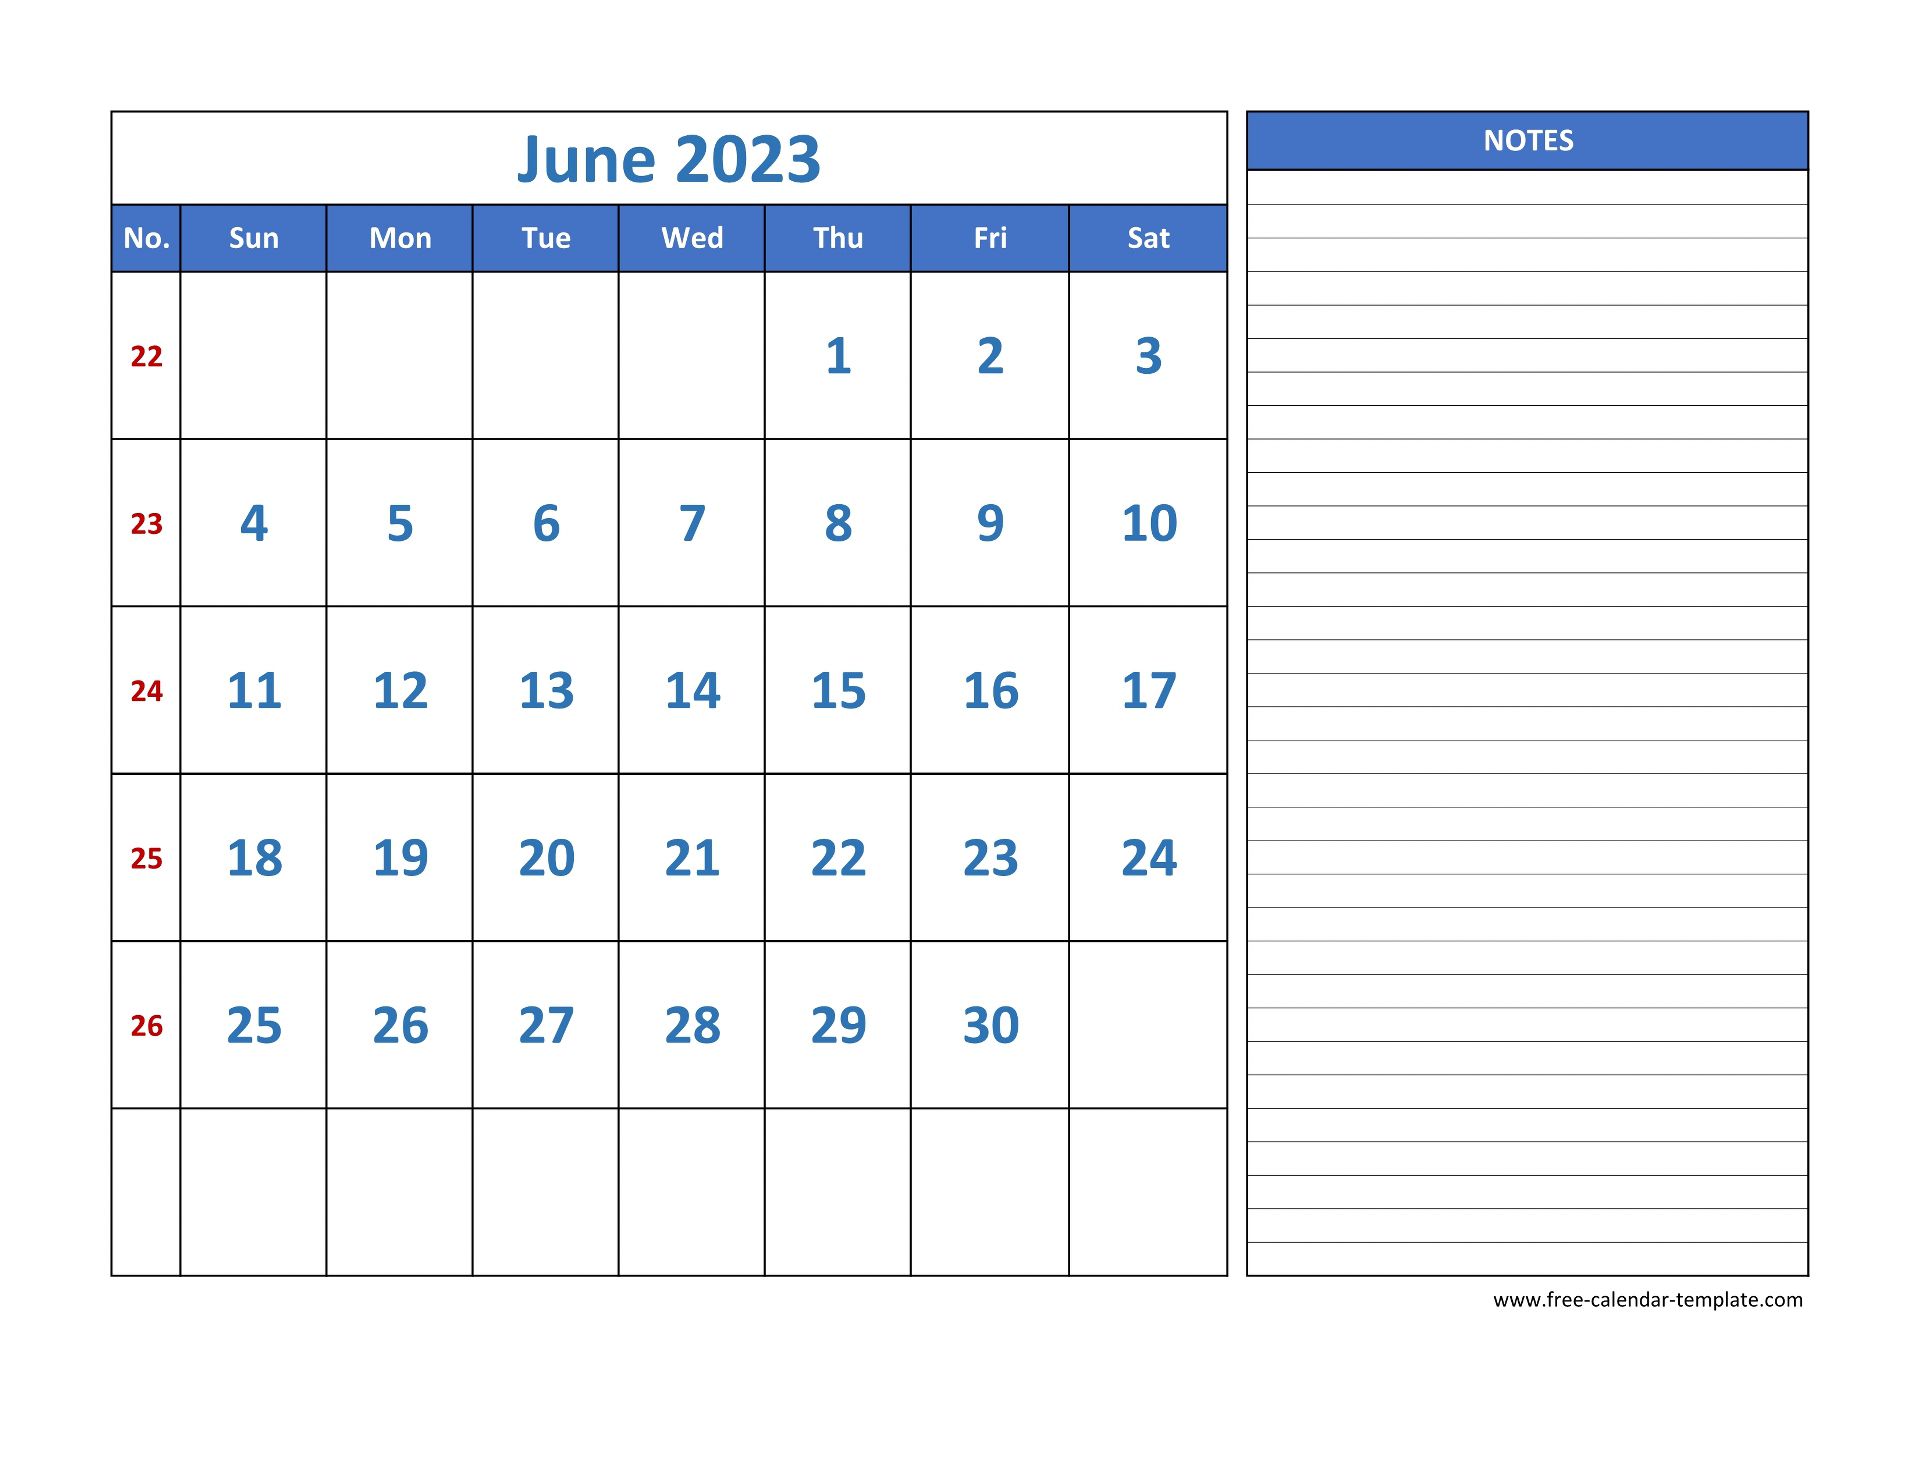 june-2023-calendar-free-printable-calendar-june-2023-calendar-template-printable-calendar